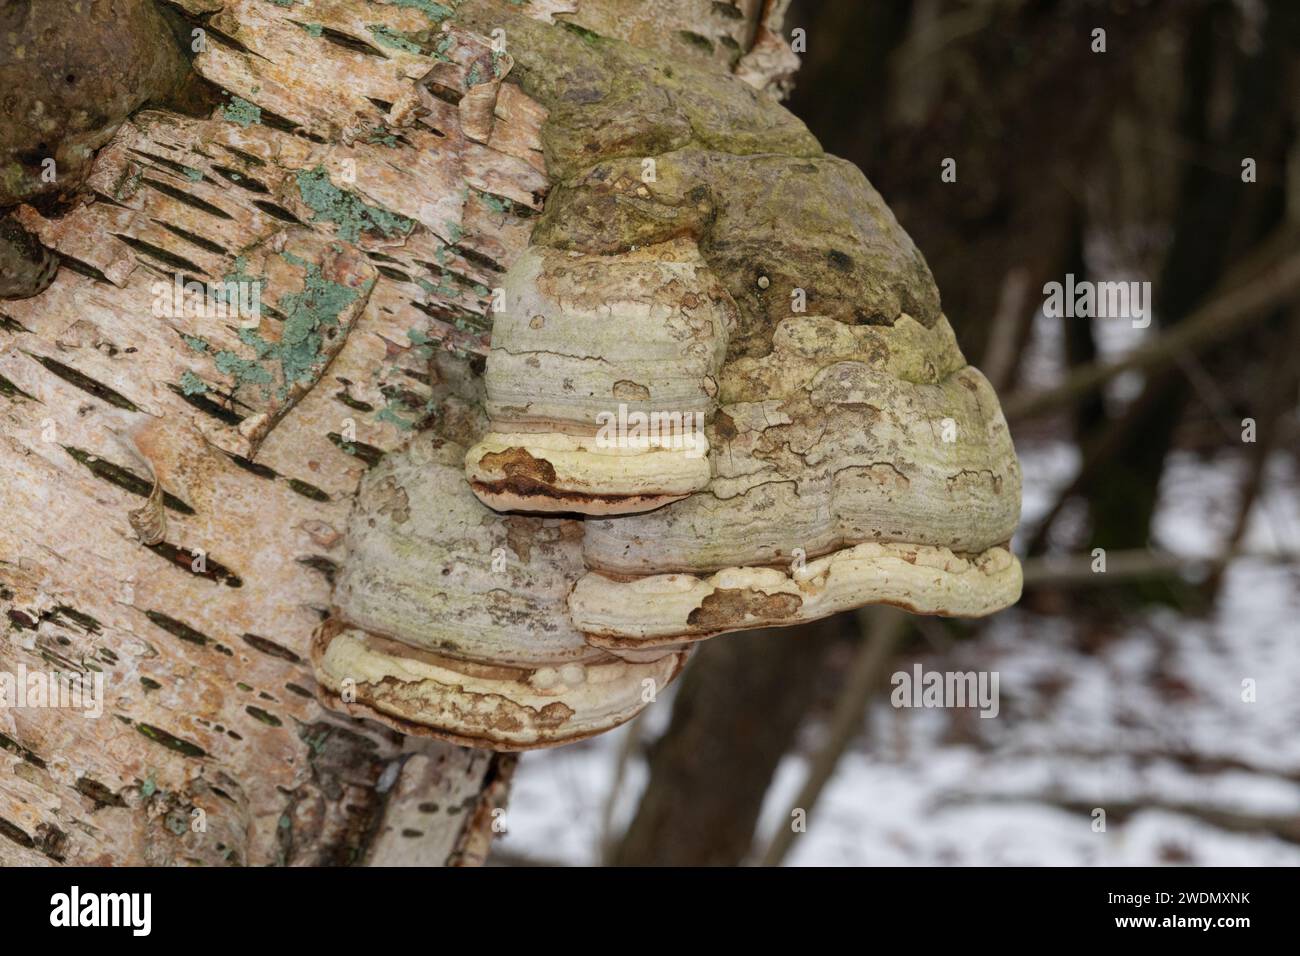 Corpi fruttiferi del fungo Tinder sulla corteccia di una betulla morta Foto Stock